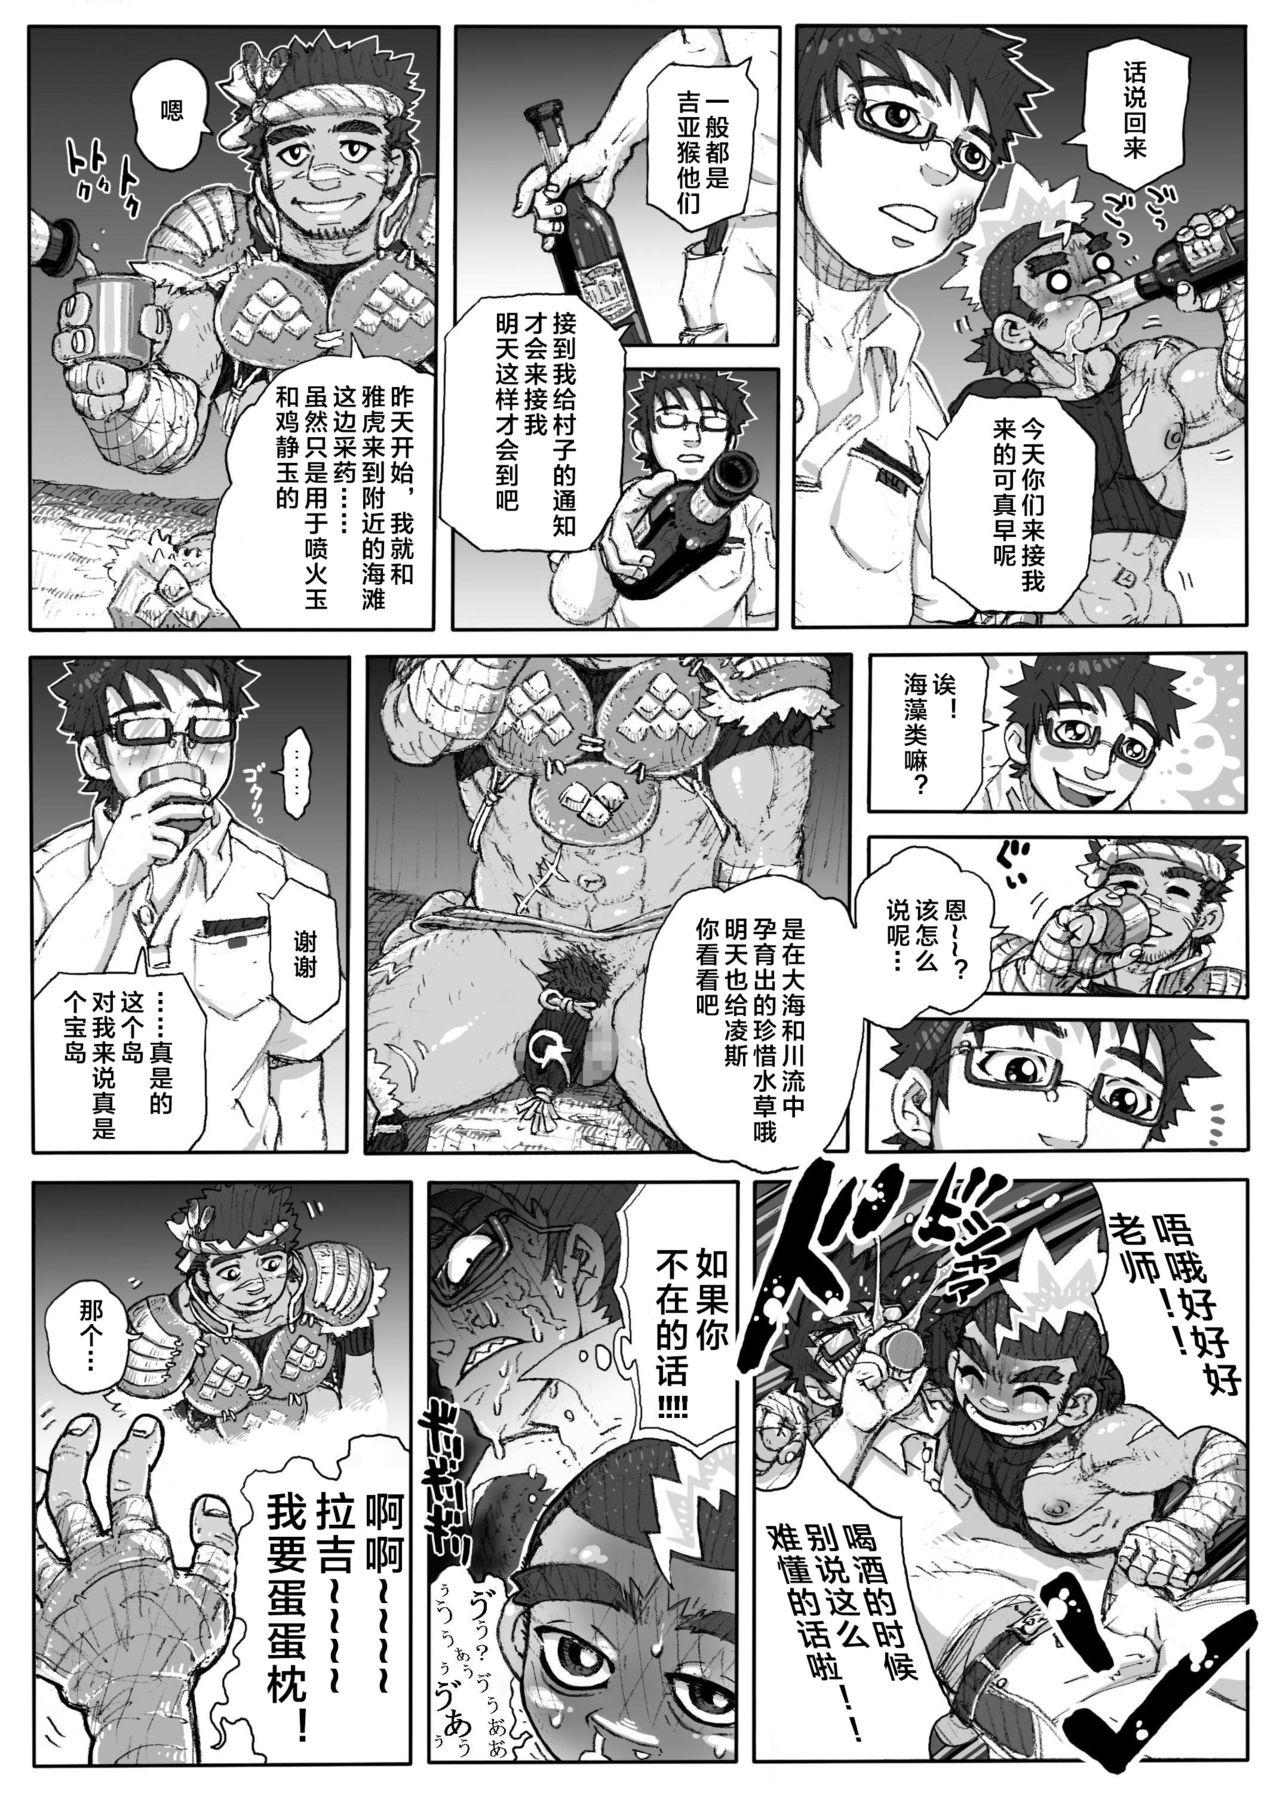 Family Porn Hepoe no Kuni kara 1 - Mizu no Gakusha Sensei, Hi no Buzoku no Saru ni Hazukashimerareru no Maki Twistys - Page 11